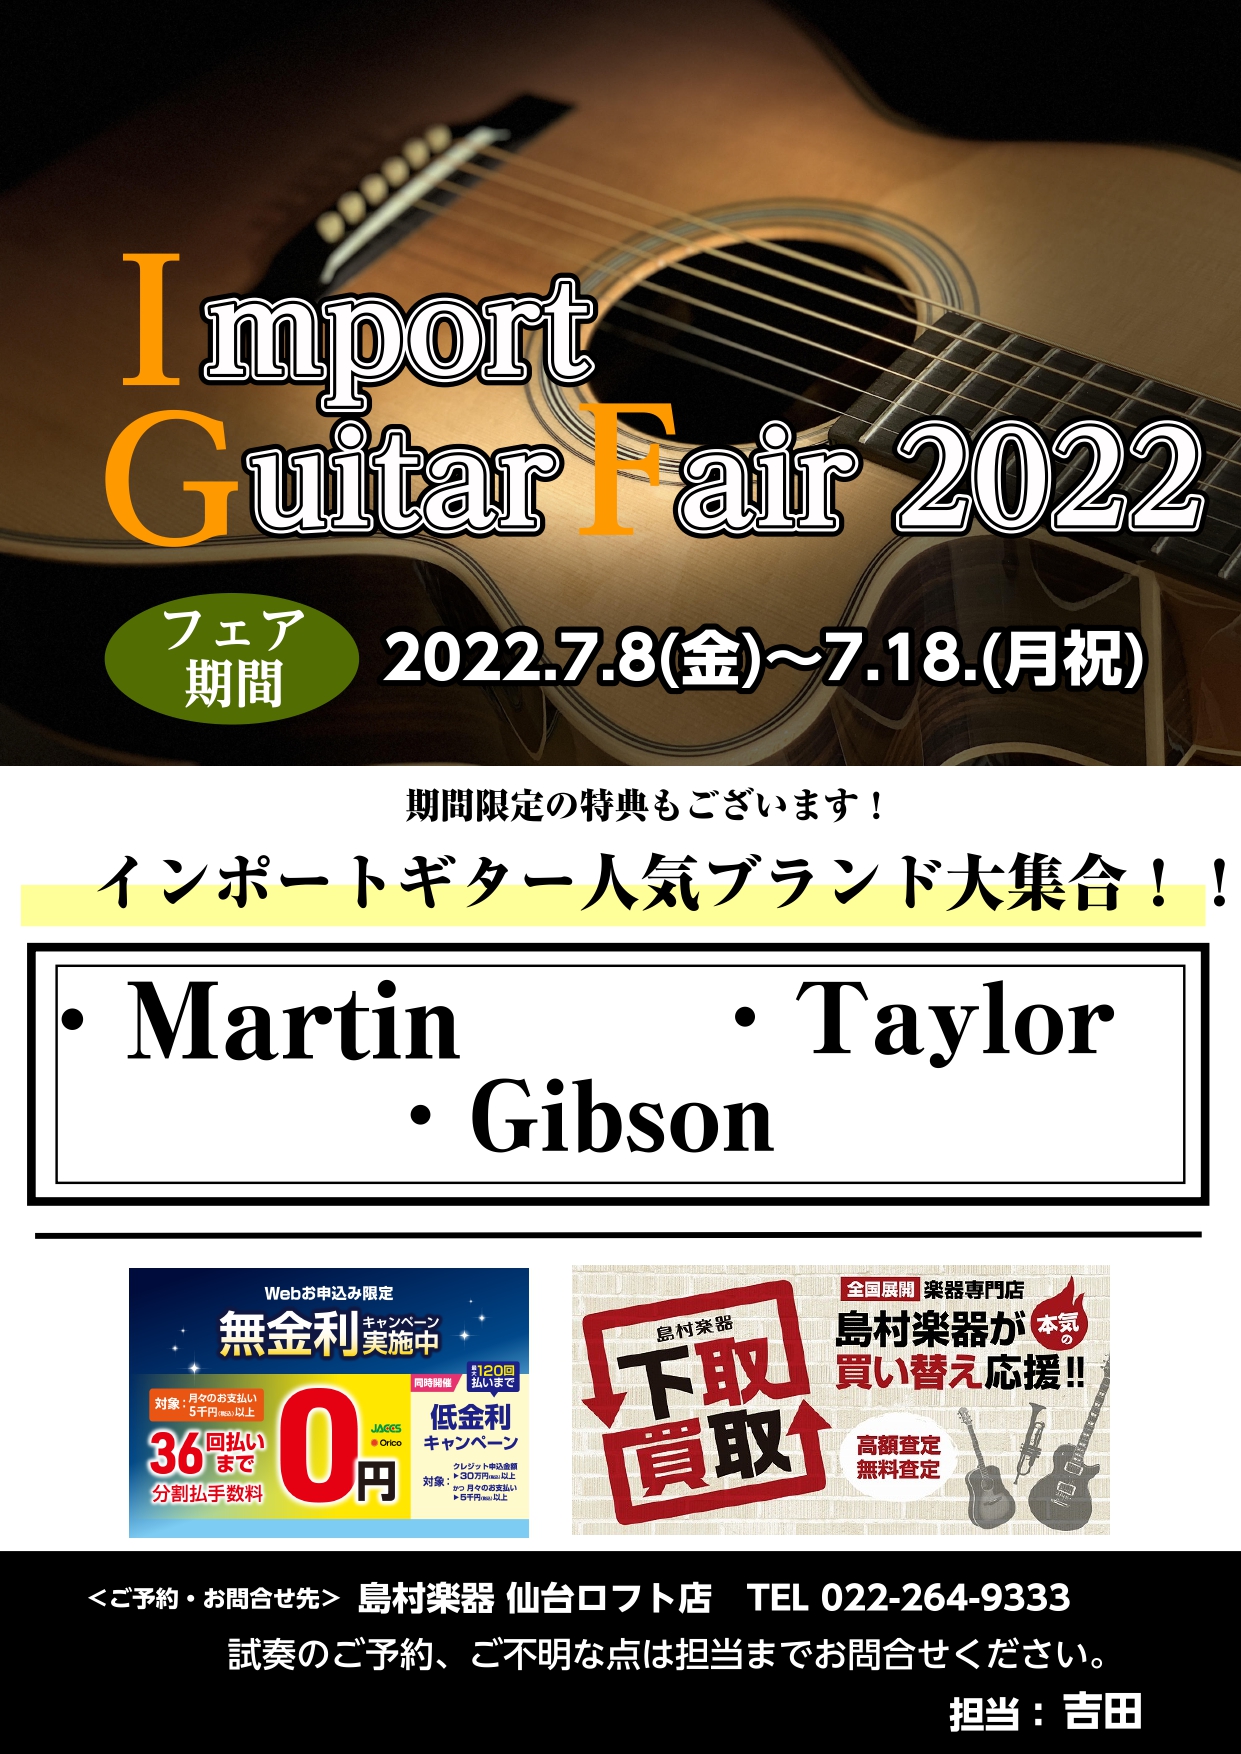 【7/8(金)～7/18(月祝)】の期間中、当店にてセレクトした選りすぐりのインポートギターを展示いたします。Martin(マーチン)・Gibson(ギブソン)・Taylor(テイラー)をご購入の方には特典もご用意しております。是非この機会にご検討くださいませ。 CONTENTSMartin(マーチ […]